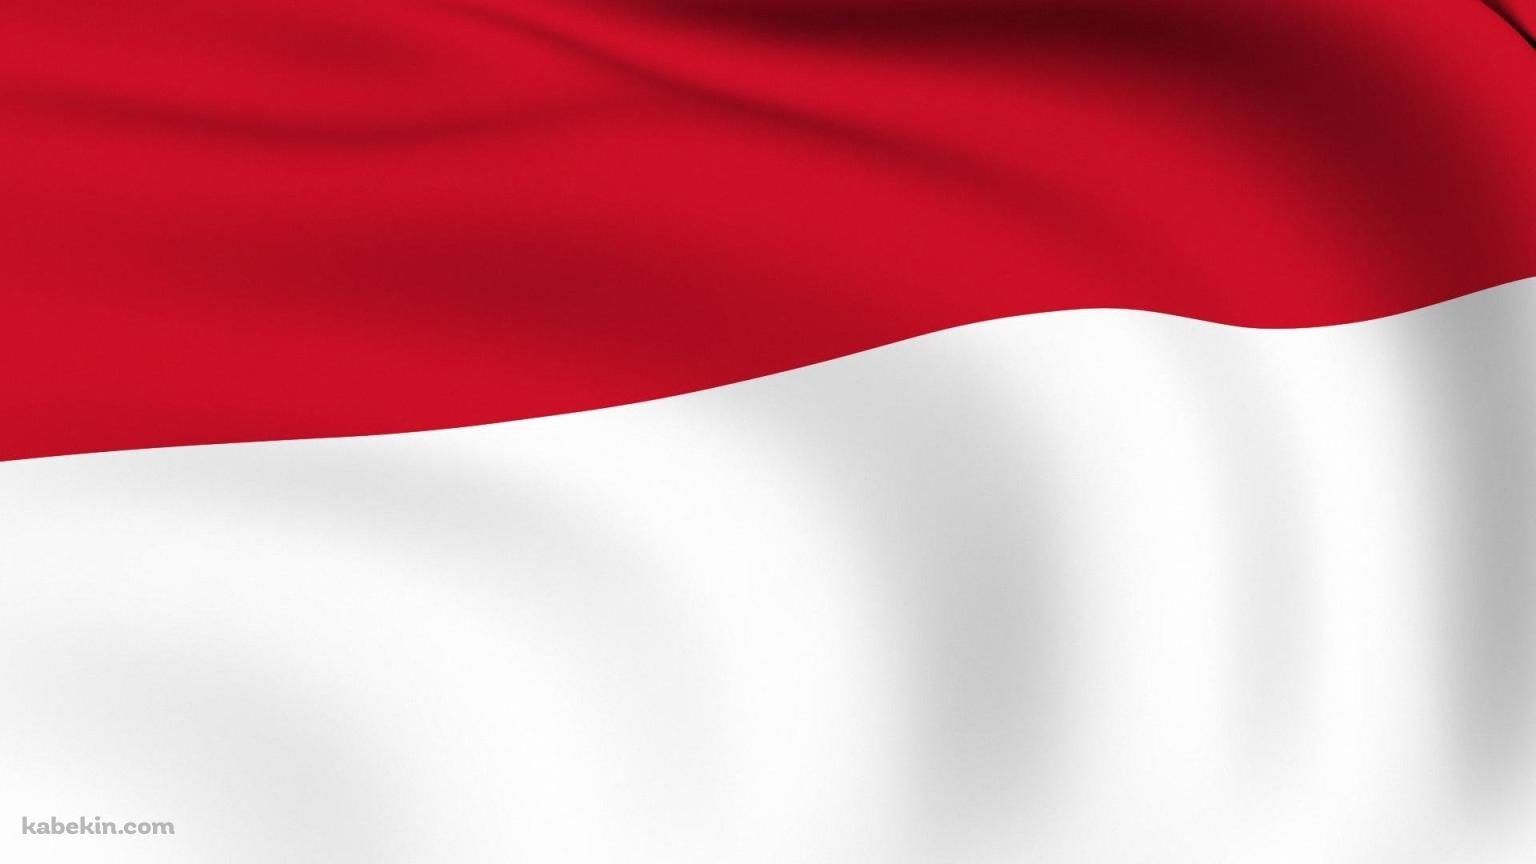 インドネシアの国旗の壁紙(1536px x 864px) 高画質 PC・デスクトップ用